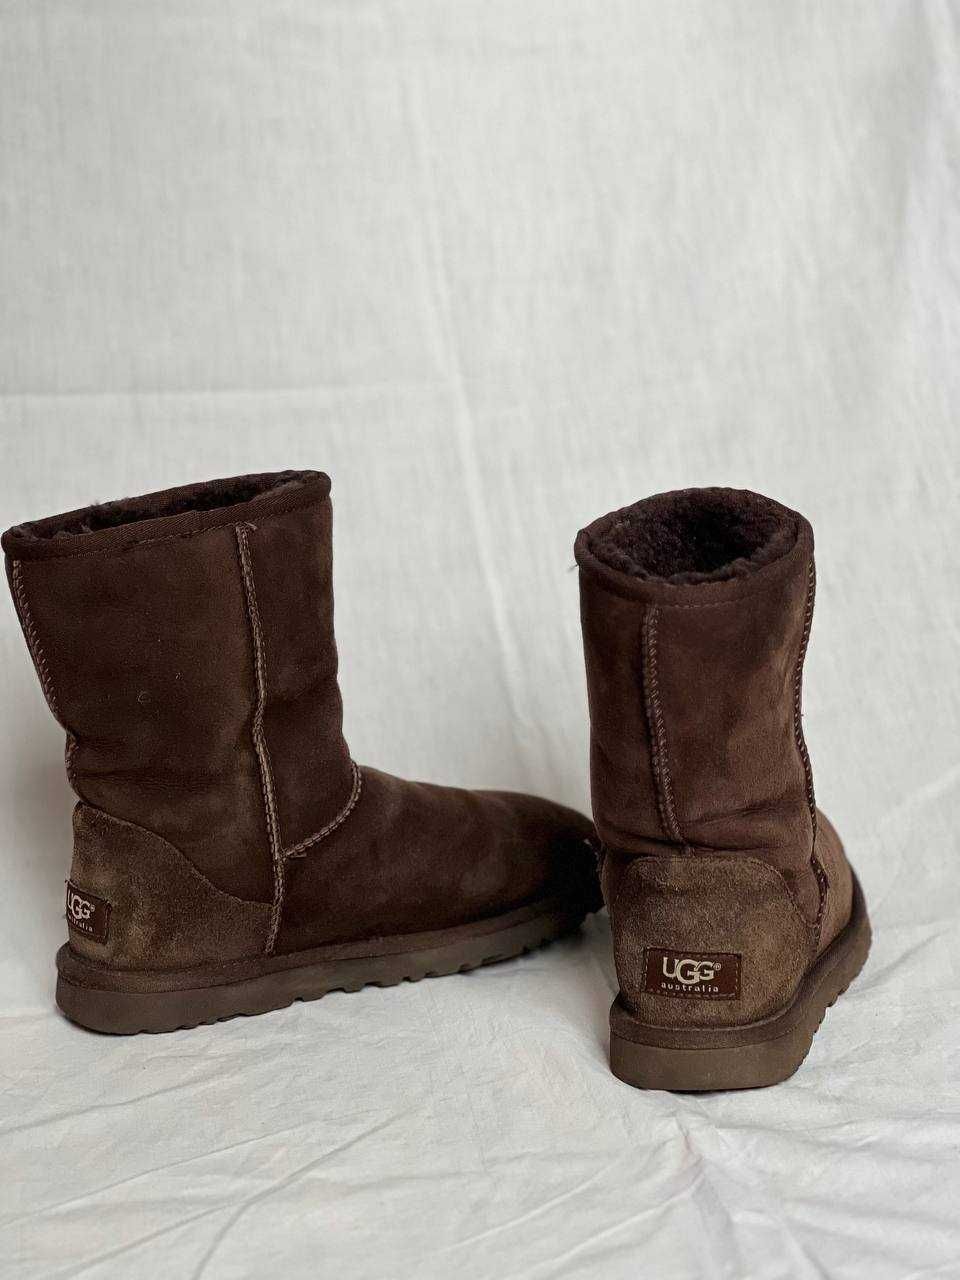 Cапоги ботинки UGG угги уггі зимові коричневі замша 37 розмір оригінал